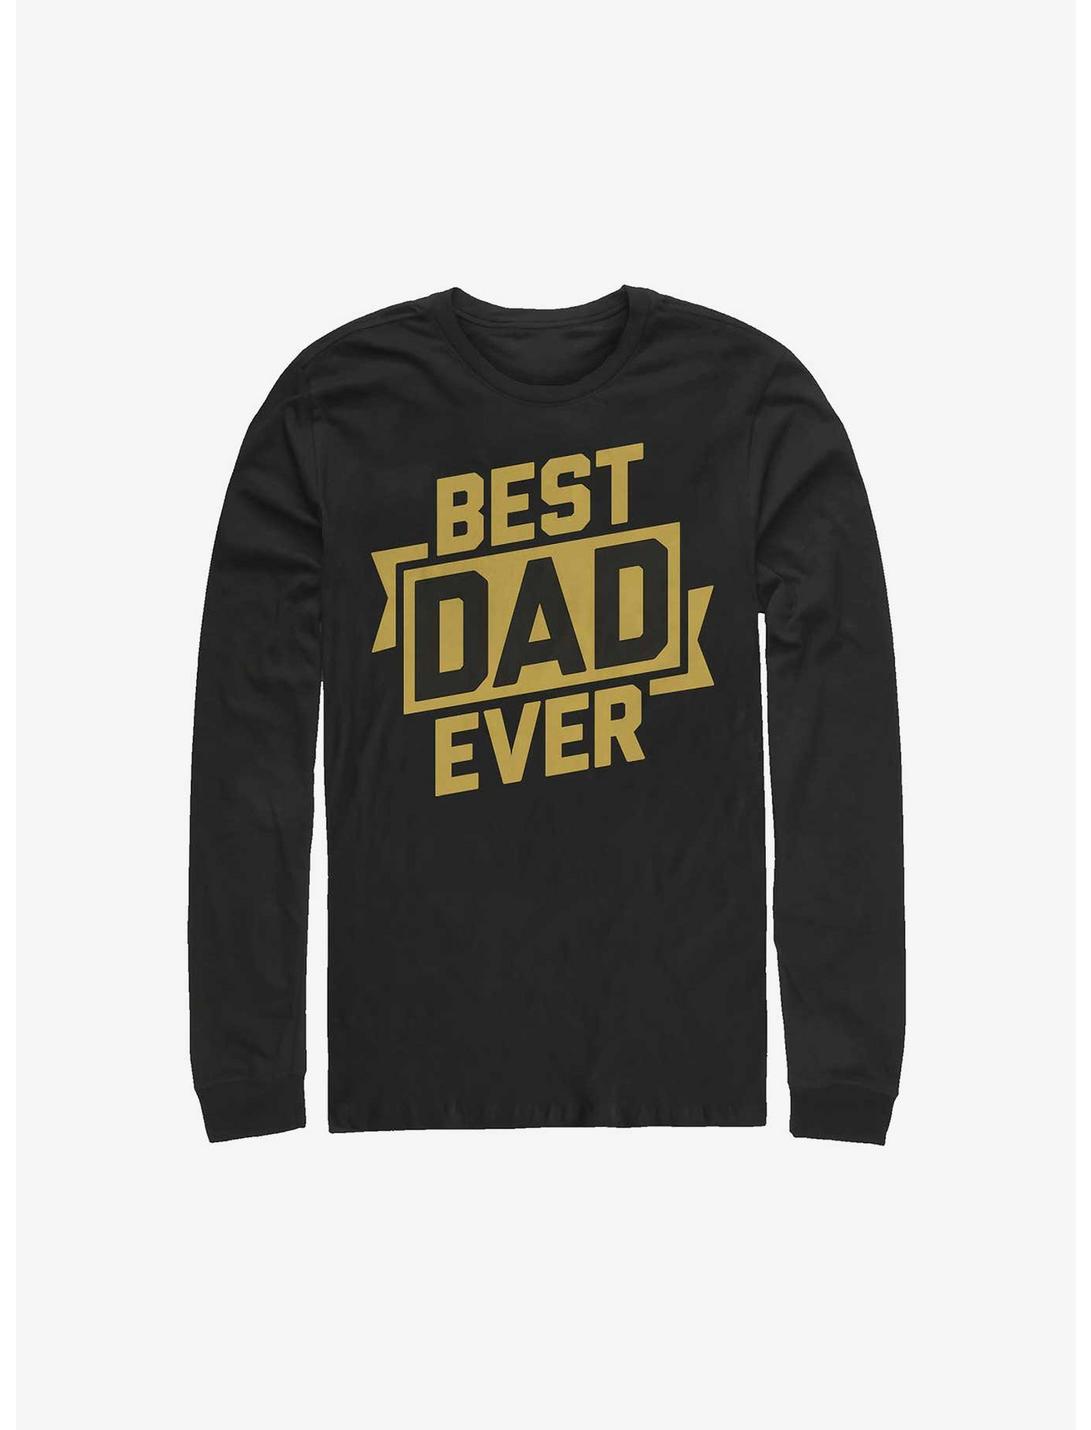 Best Dad Ever Long-Sleeve T-Shirt, BLACK, hi-res